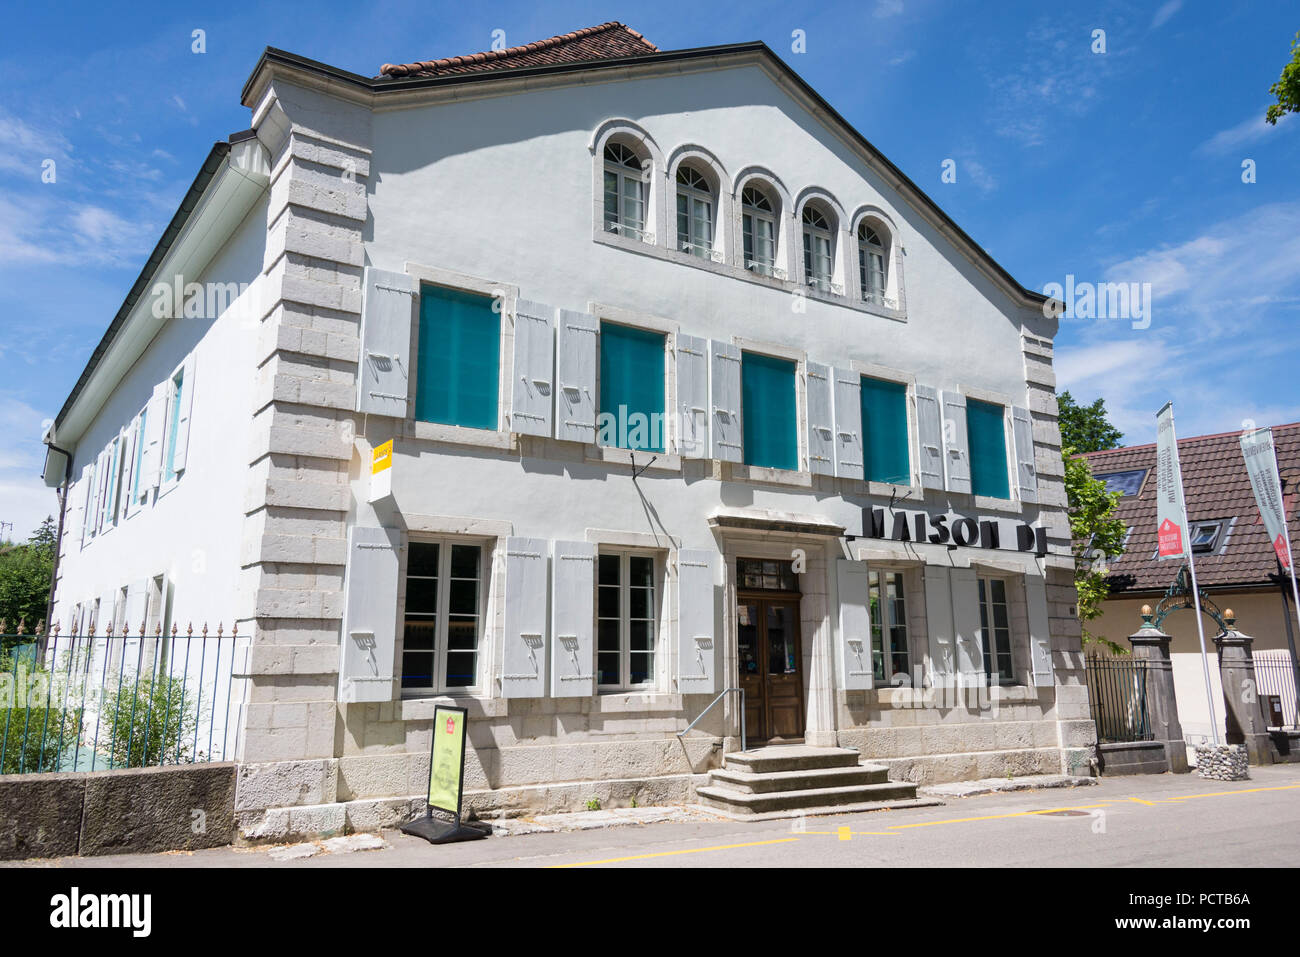 Maison de l'Absinthe, Fleurier, Jura suisse, Canton de Neuchâtel, Suisse Romande, Suisse Banque D'Images